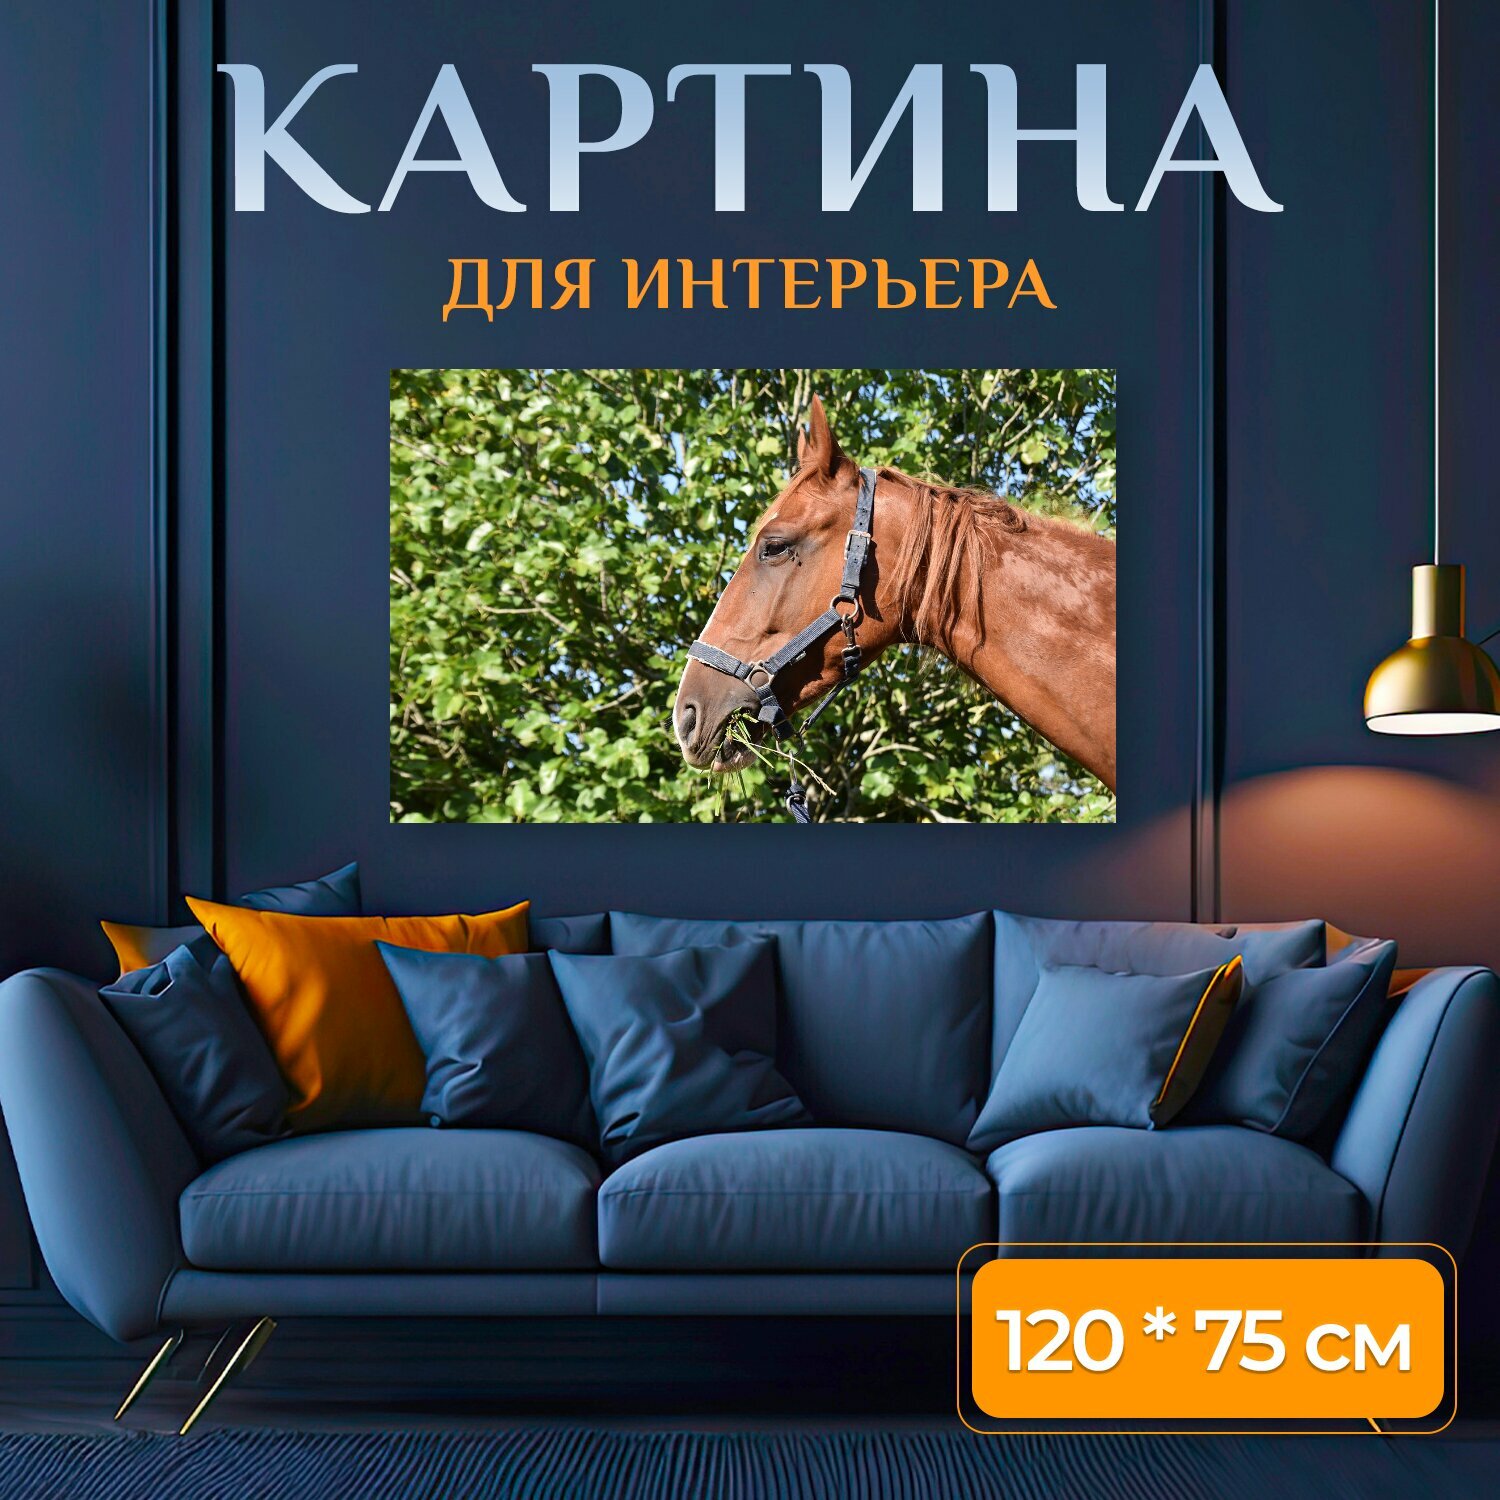 Картина на холсте "Лошадь, животное, троттер" на подрамнике 120х75 см. для интерьера